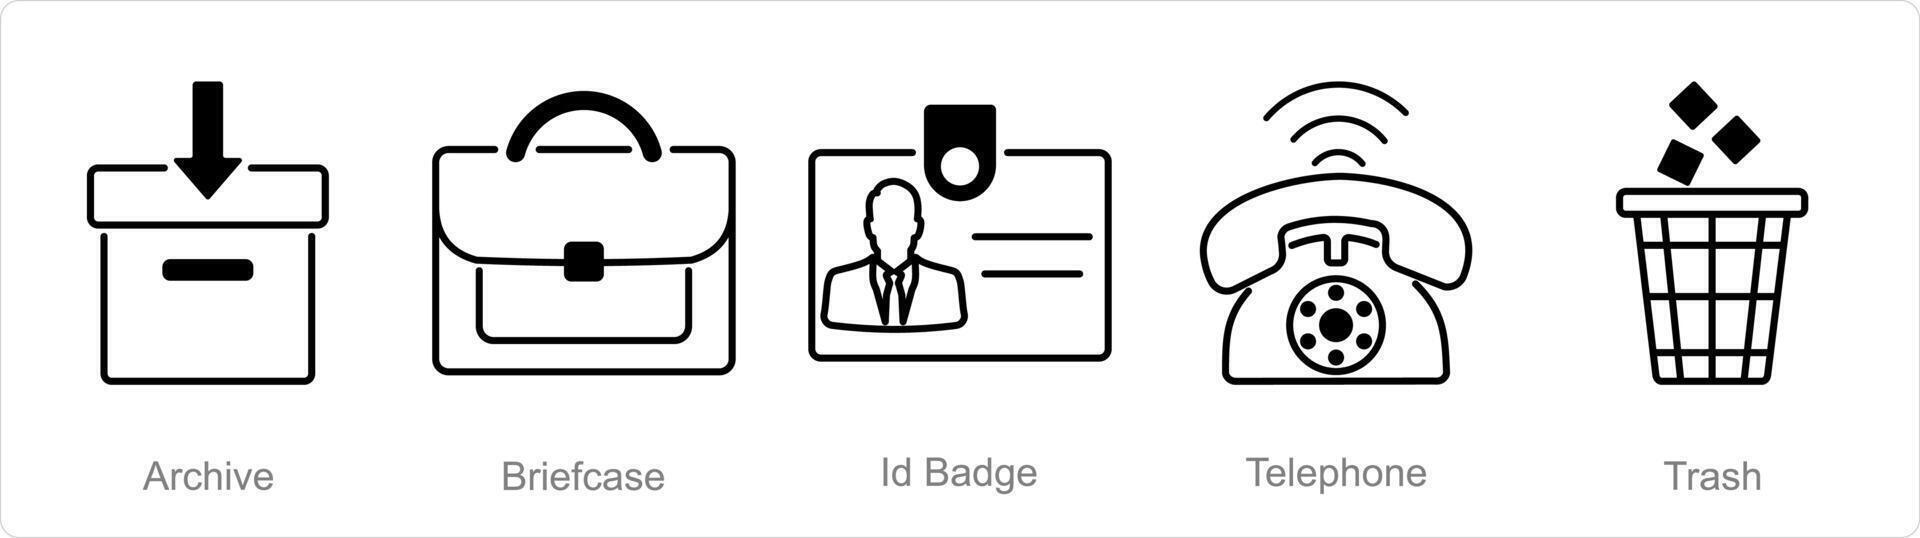 une ensemble de 5 Bureau Icônes comme archive, mallette, id badge vecteur